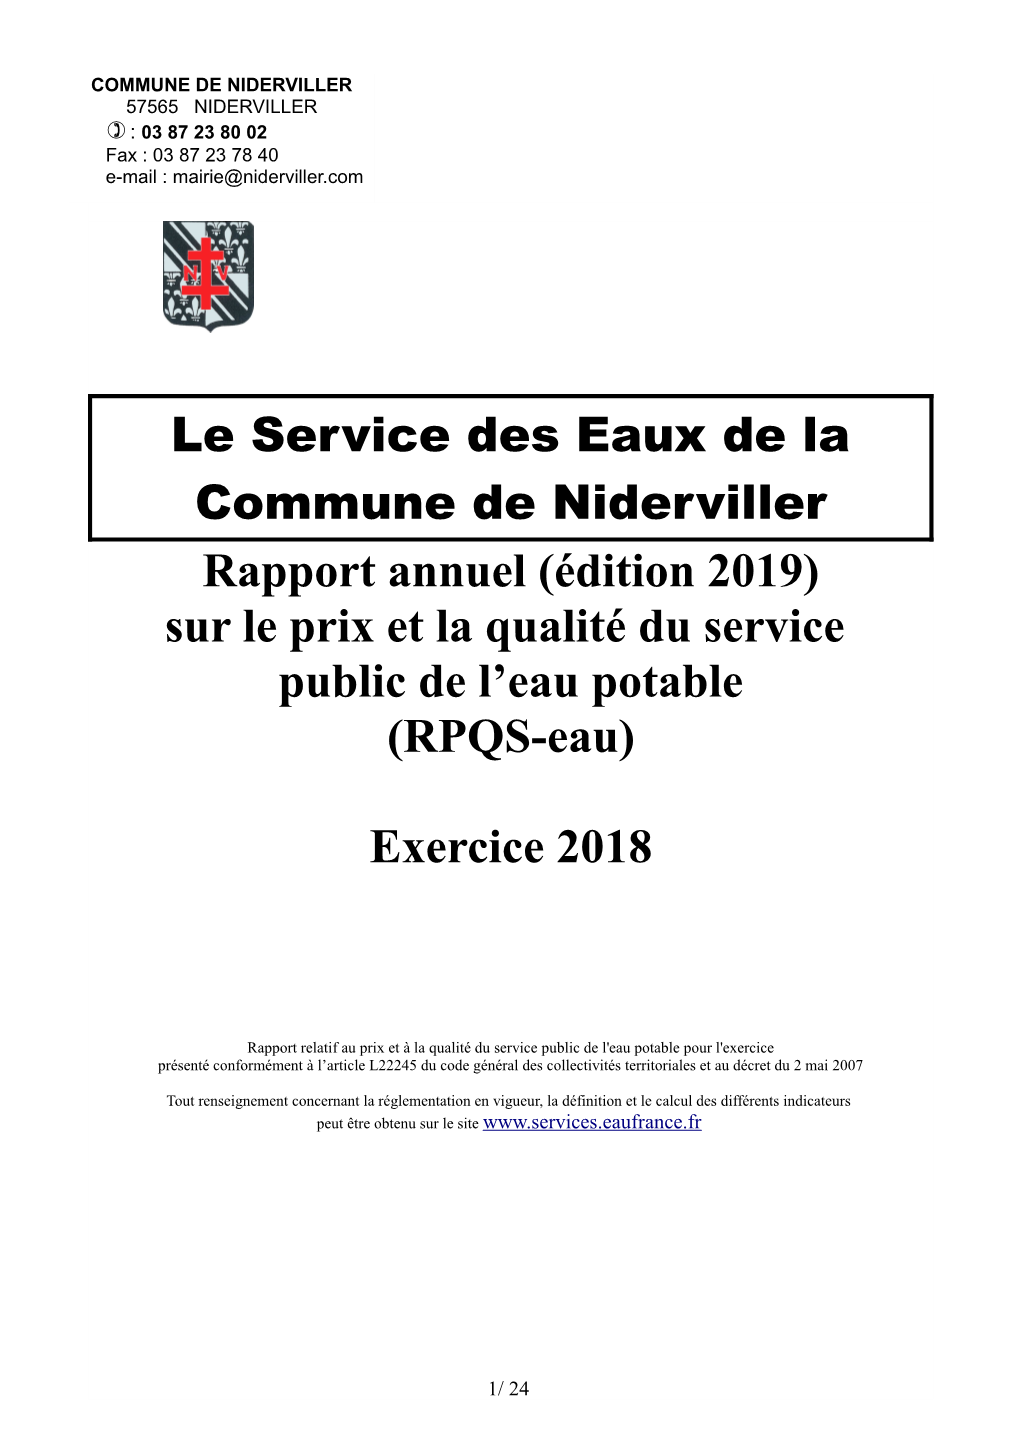 Rapport Annuel (Édition 2019) Sur Le Prix Et La Qualité Du Service Public De L’Eau Potable (RPQS-Eau)